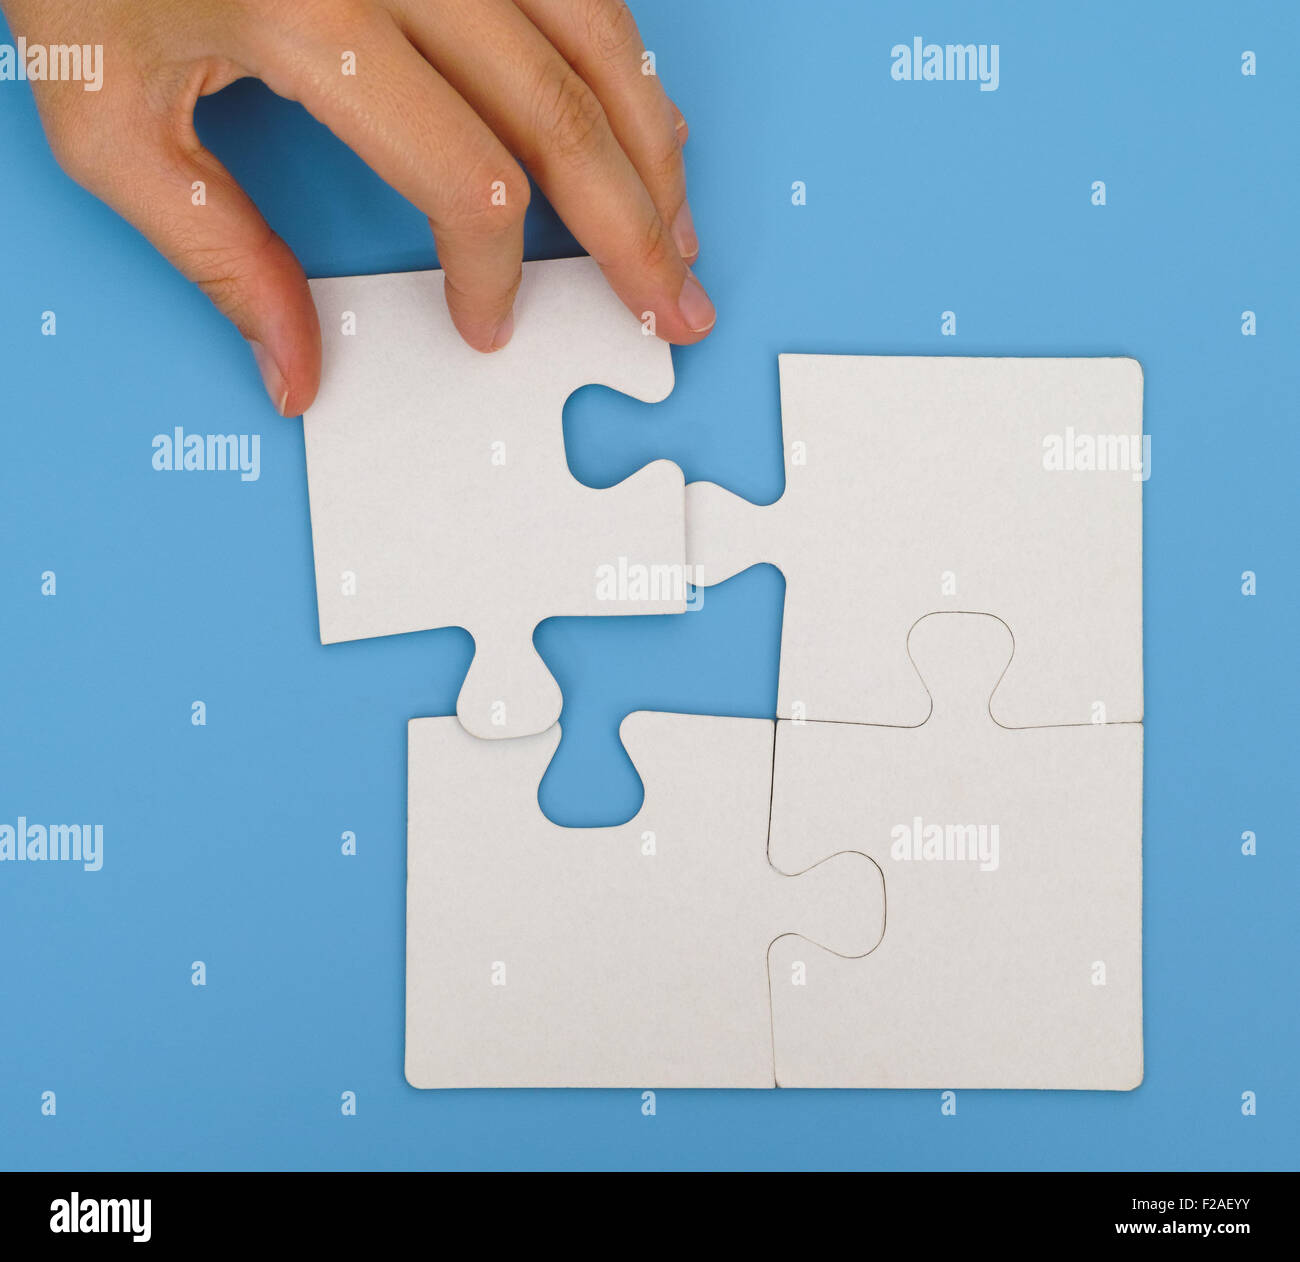 Donna mettendo a mano il pezzo finale per completare semplice puzzle su sfondo blu Foto Stock